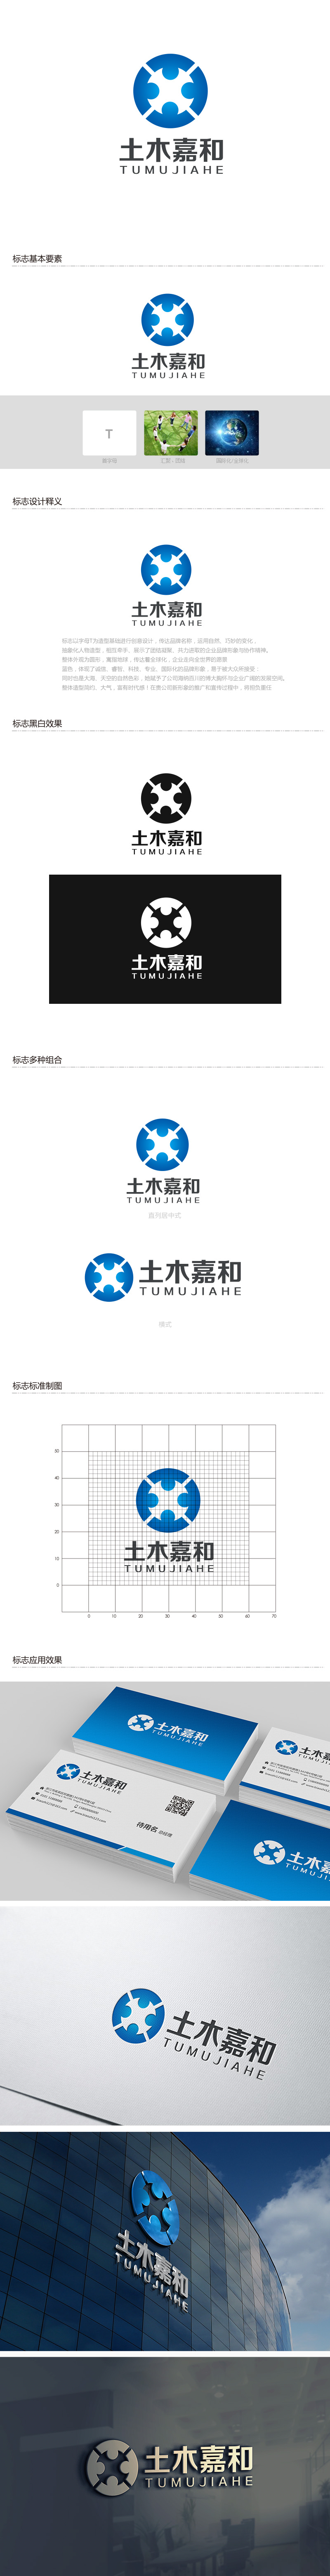 吴晓伟的北京土木嘉和工程咨询有限公司logo设计